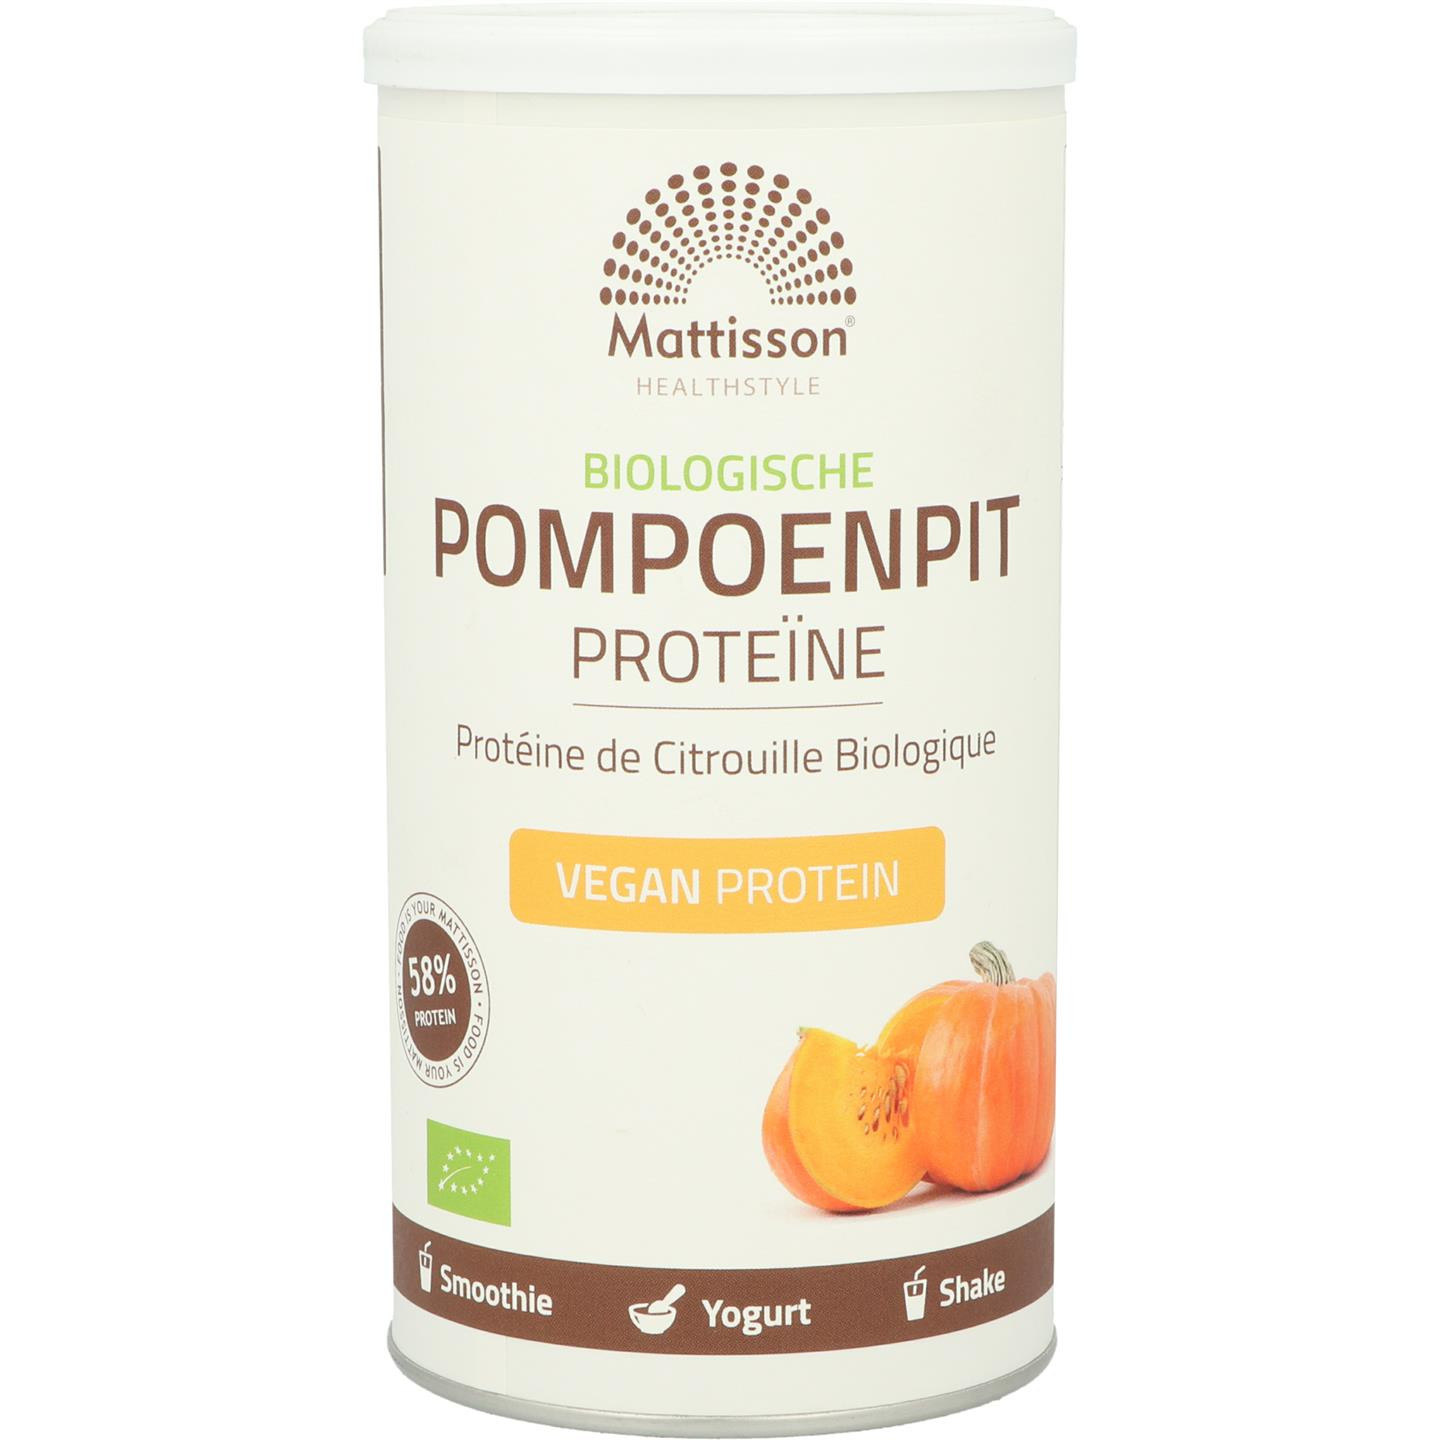 Pompoenpit Proteïne